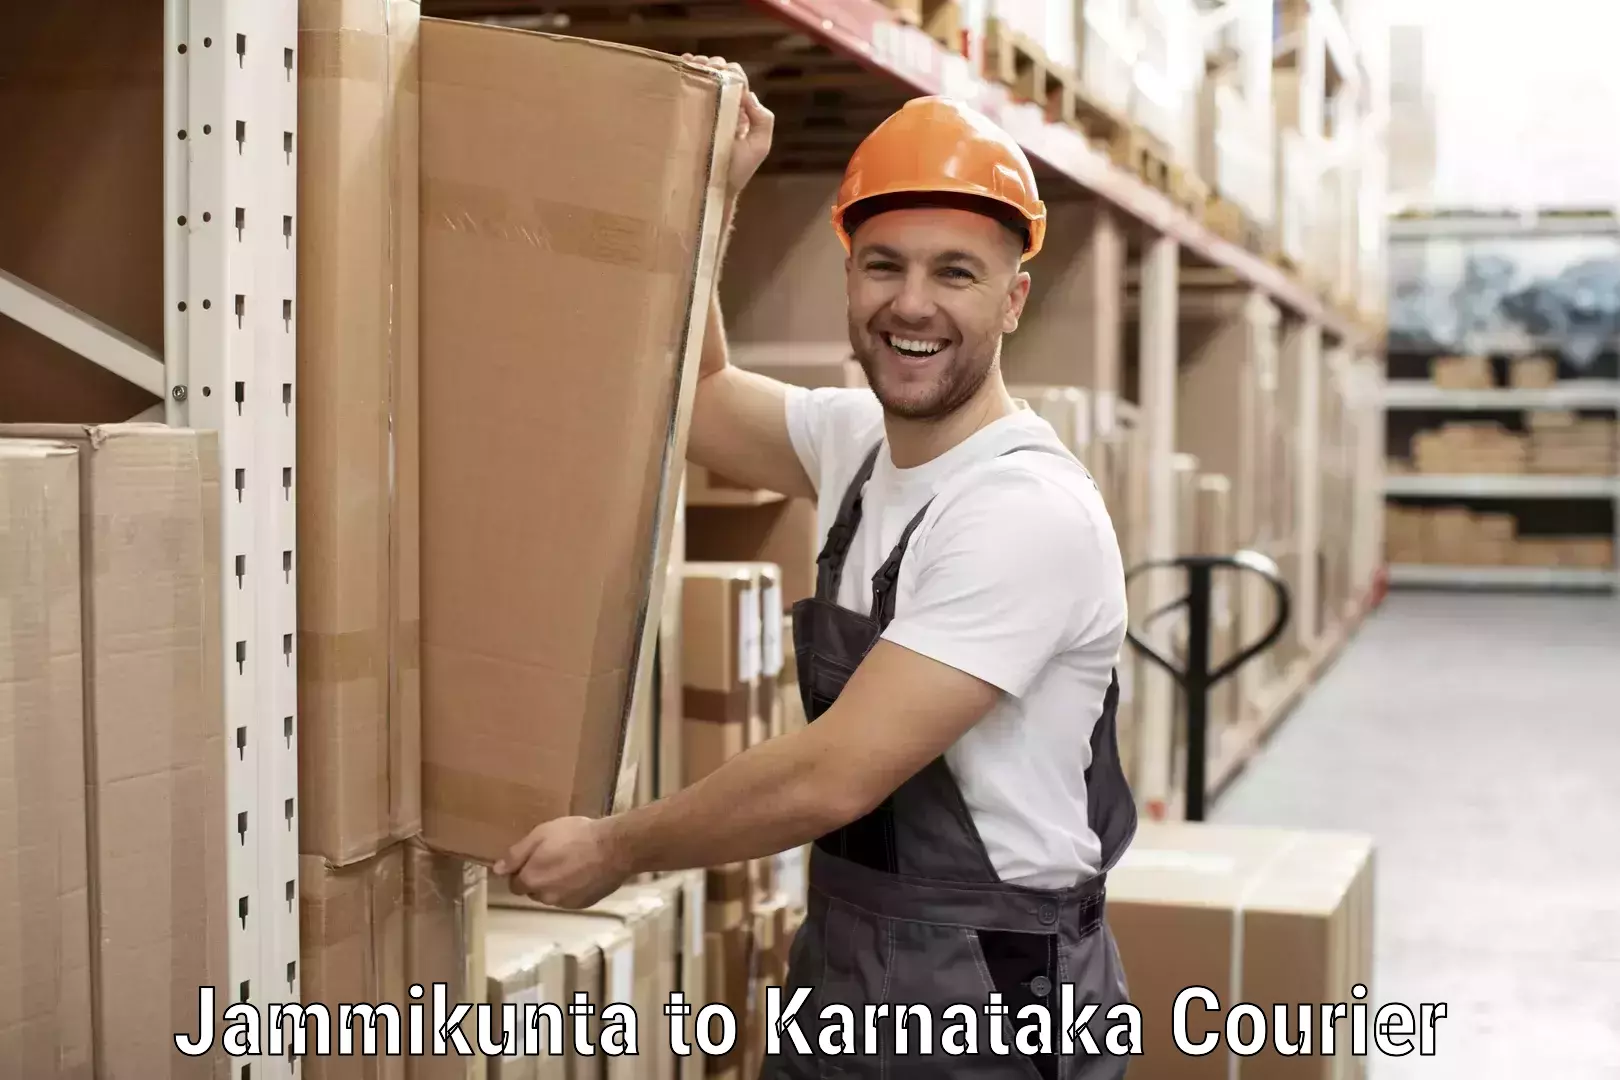 Smart parcel solutions Jammikunta to Karnataka